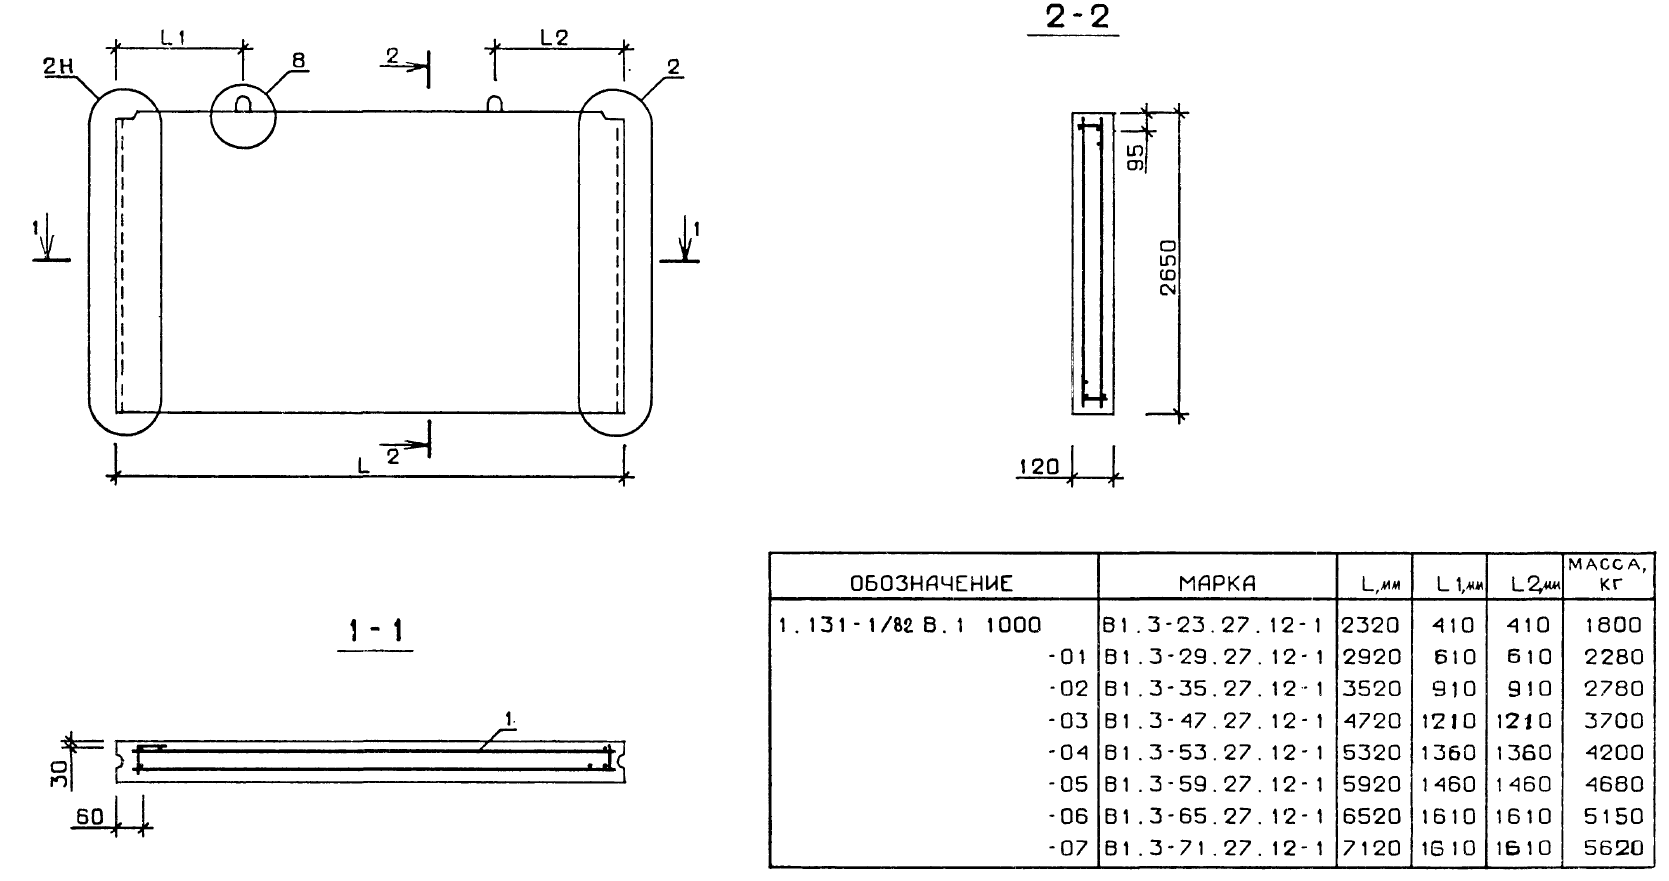 Х 9 27 16 27. Вс1-16-501 стеновая панель. Панели толщиной 160 мм b1.5-29.27.16.-2.1. Внутренняя стеновая панель маркировка. Панель стеновая ТПС 0,6-0,6.